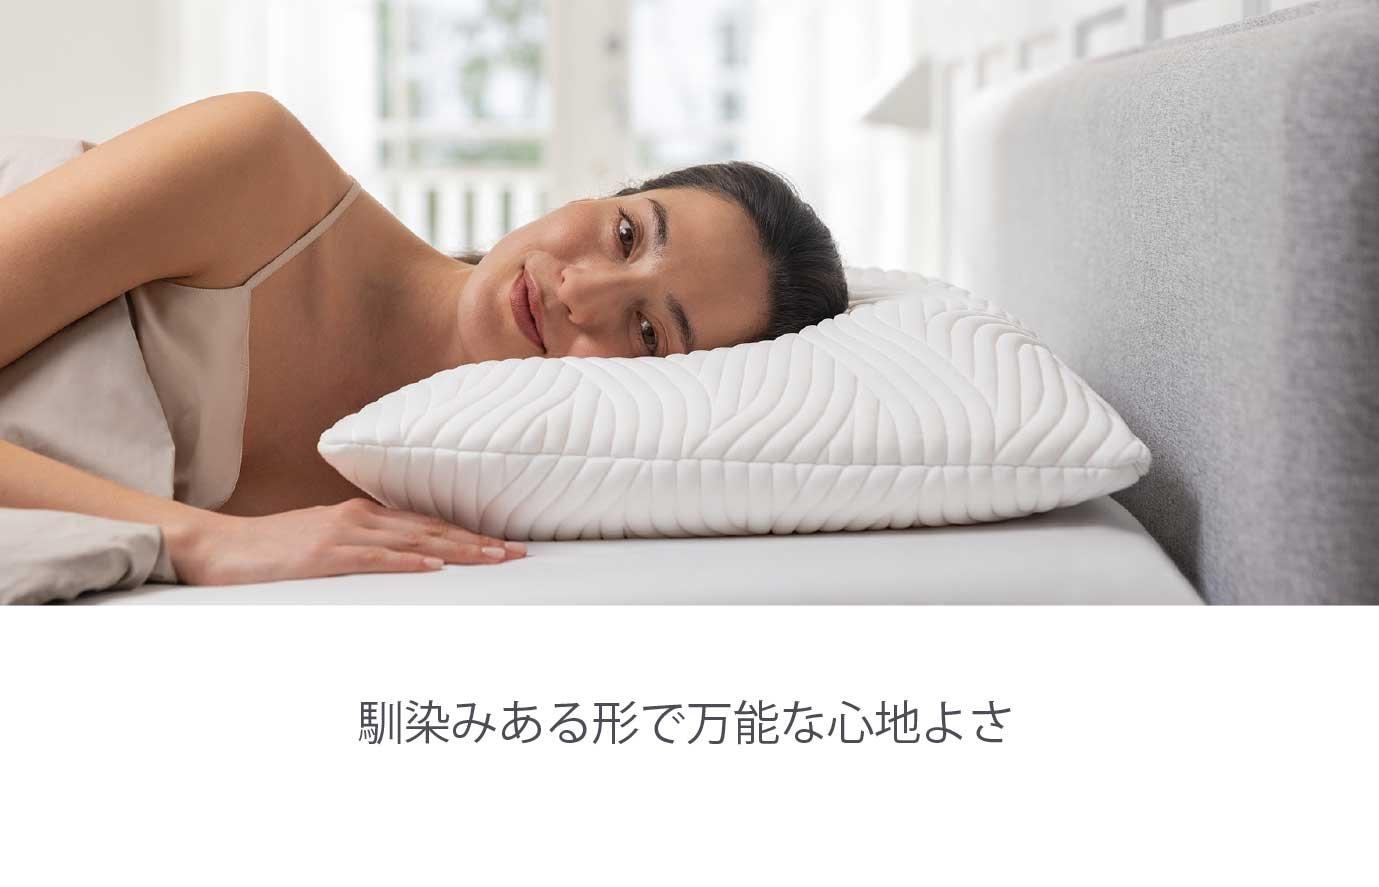 テンピュール 枕 - 枕